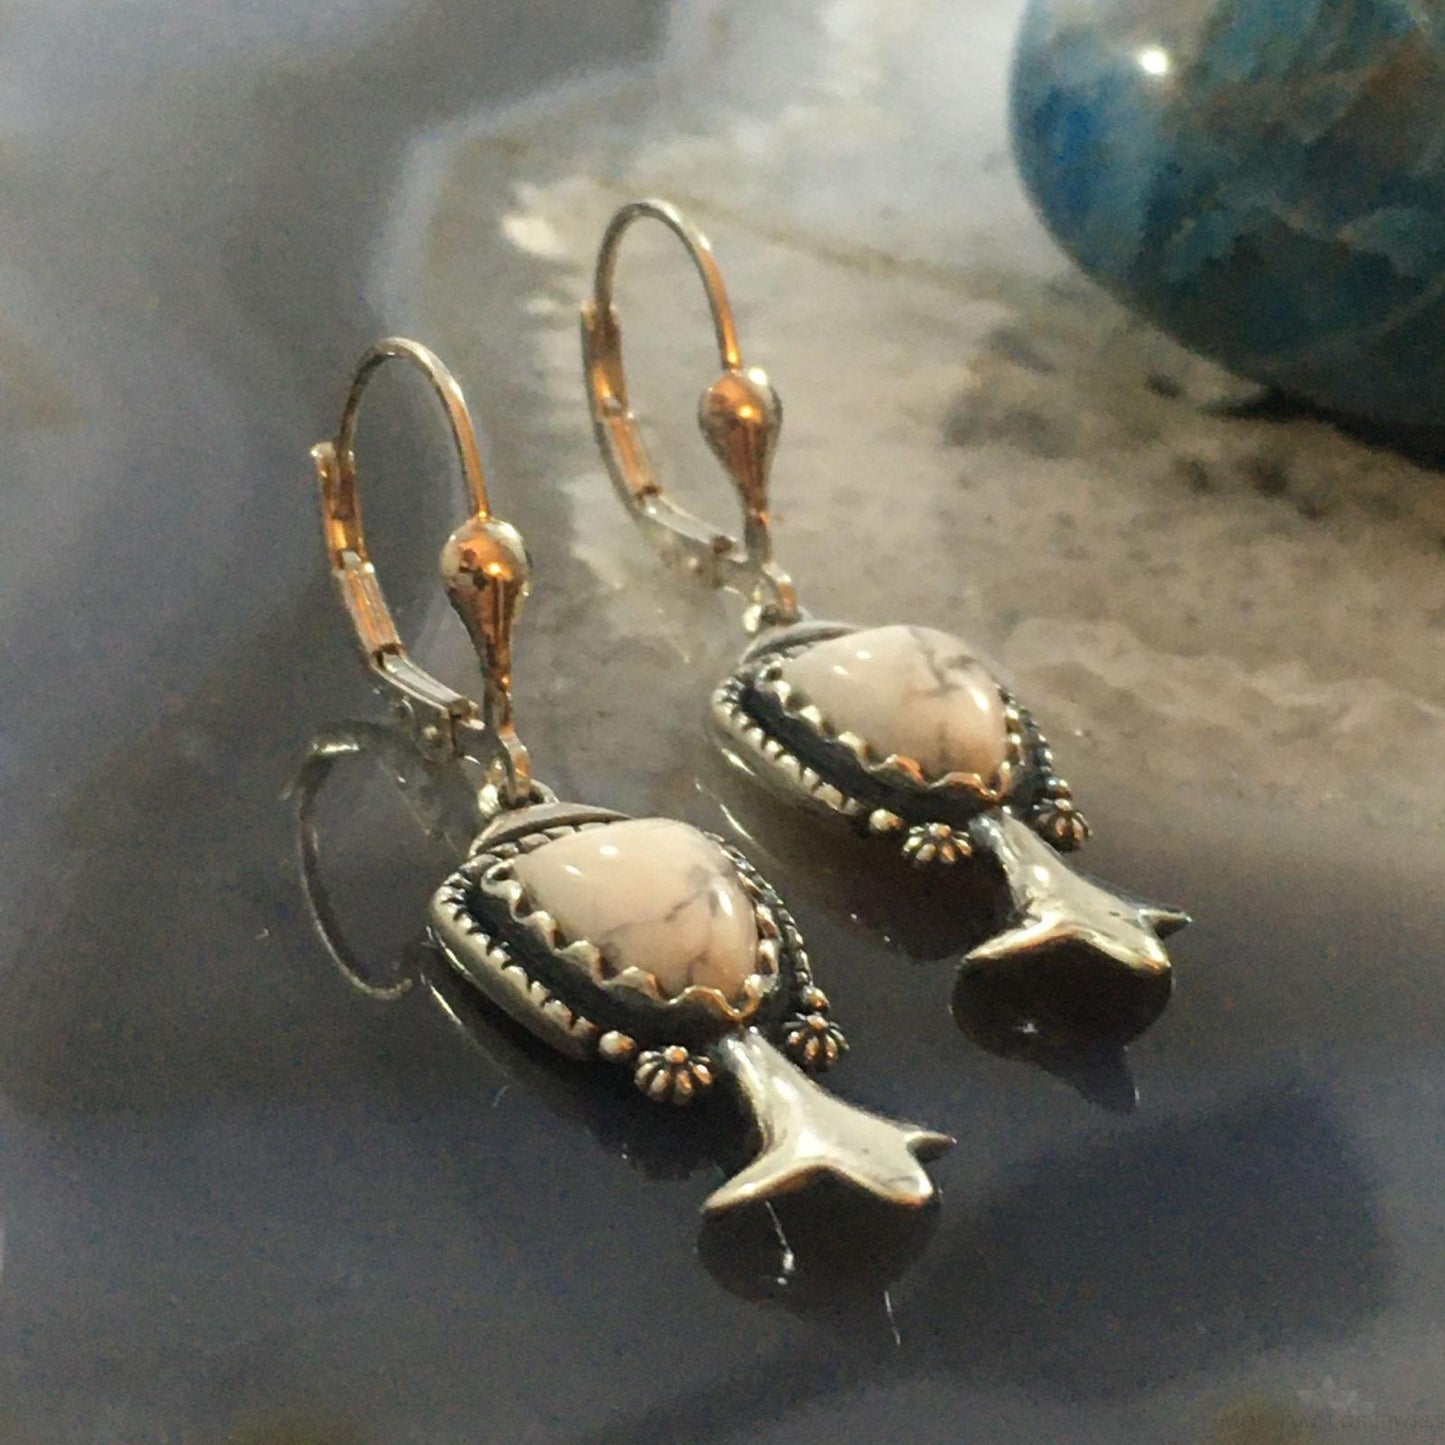 Carolyn Pollack Southwestern Style Sterling Silver Howlite Dangle Earrings For Women